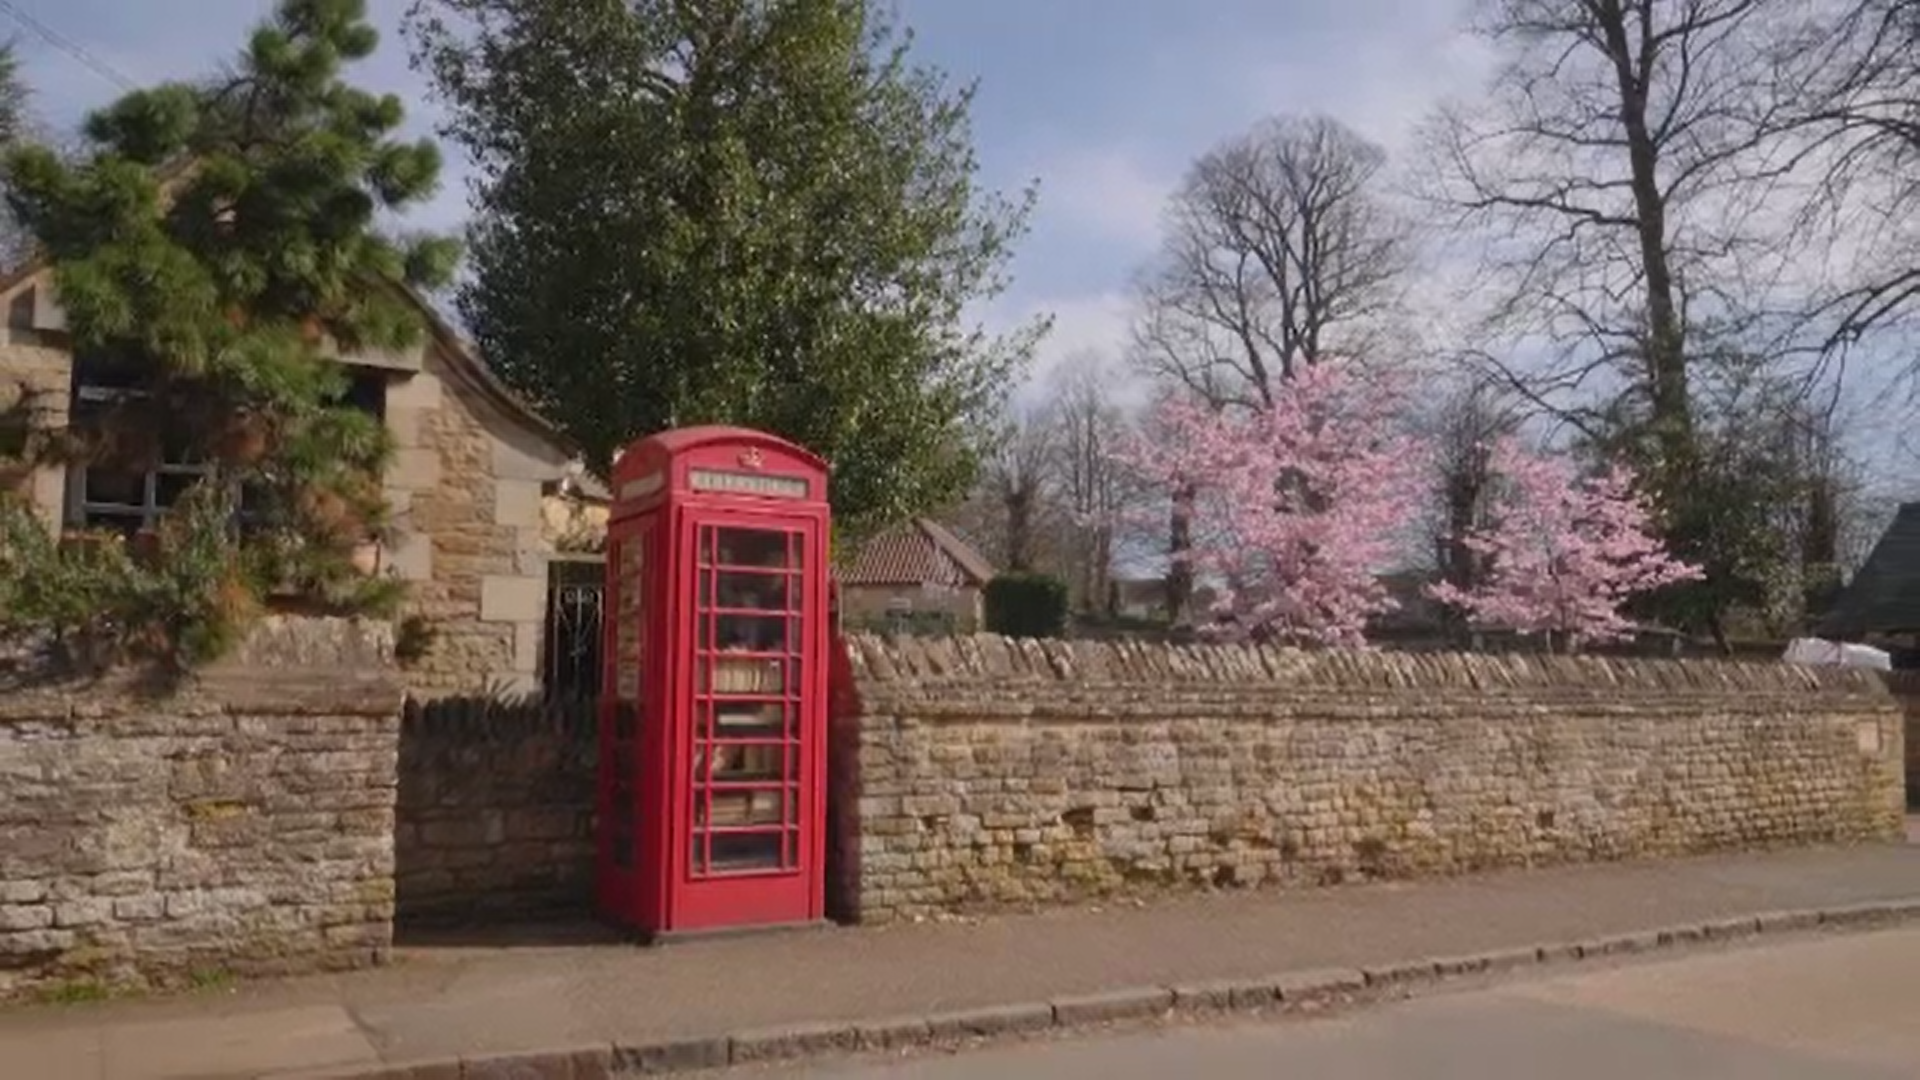 Cabinele telefonice roşii, simbol al Marii Britanii, sunt scoase la licitaţie pentru a fi transformate în ceva util